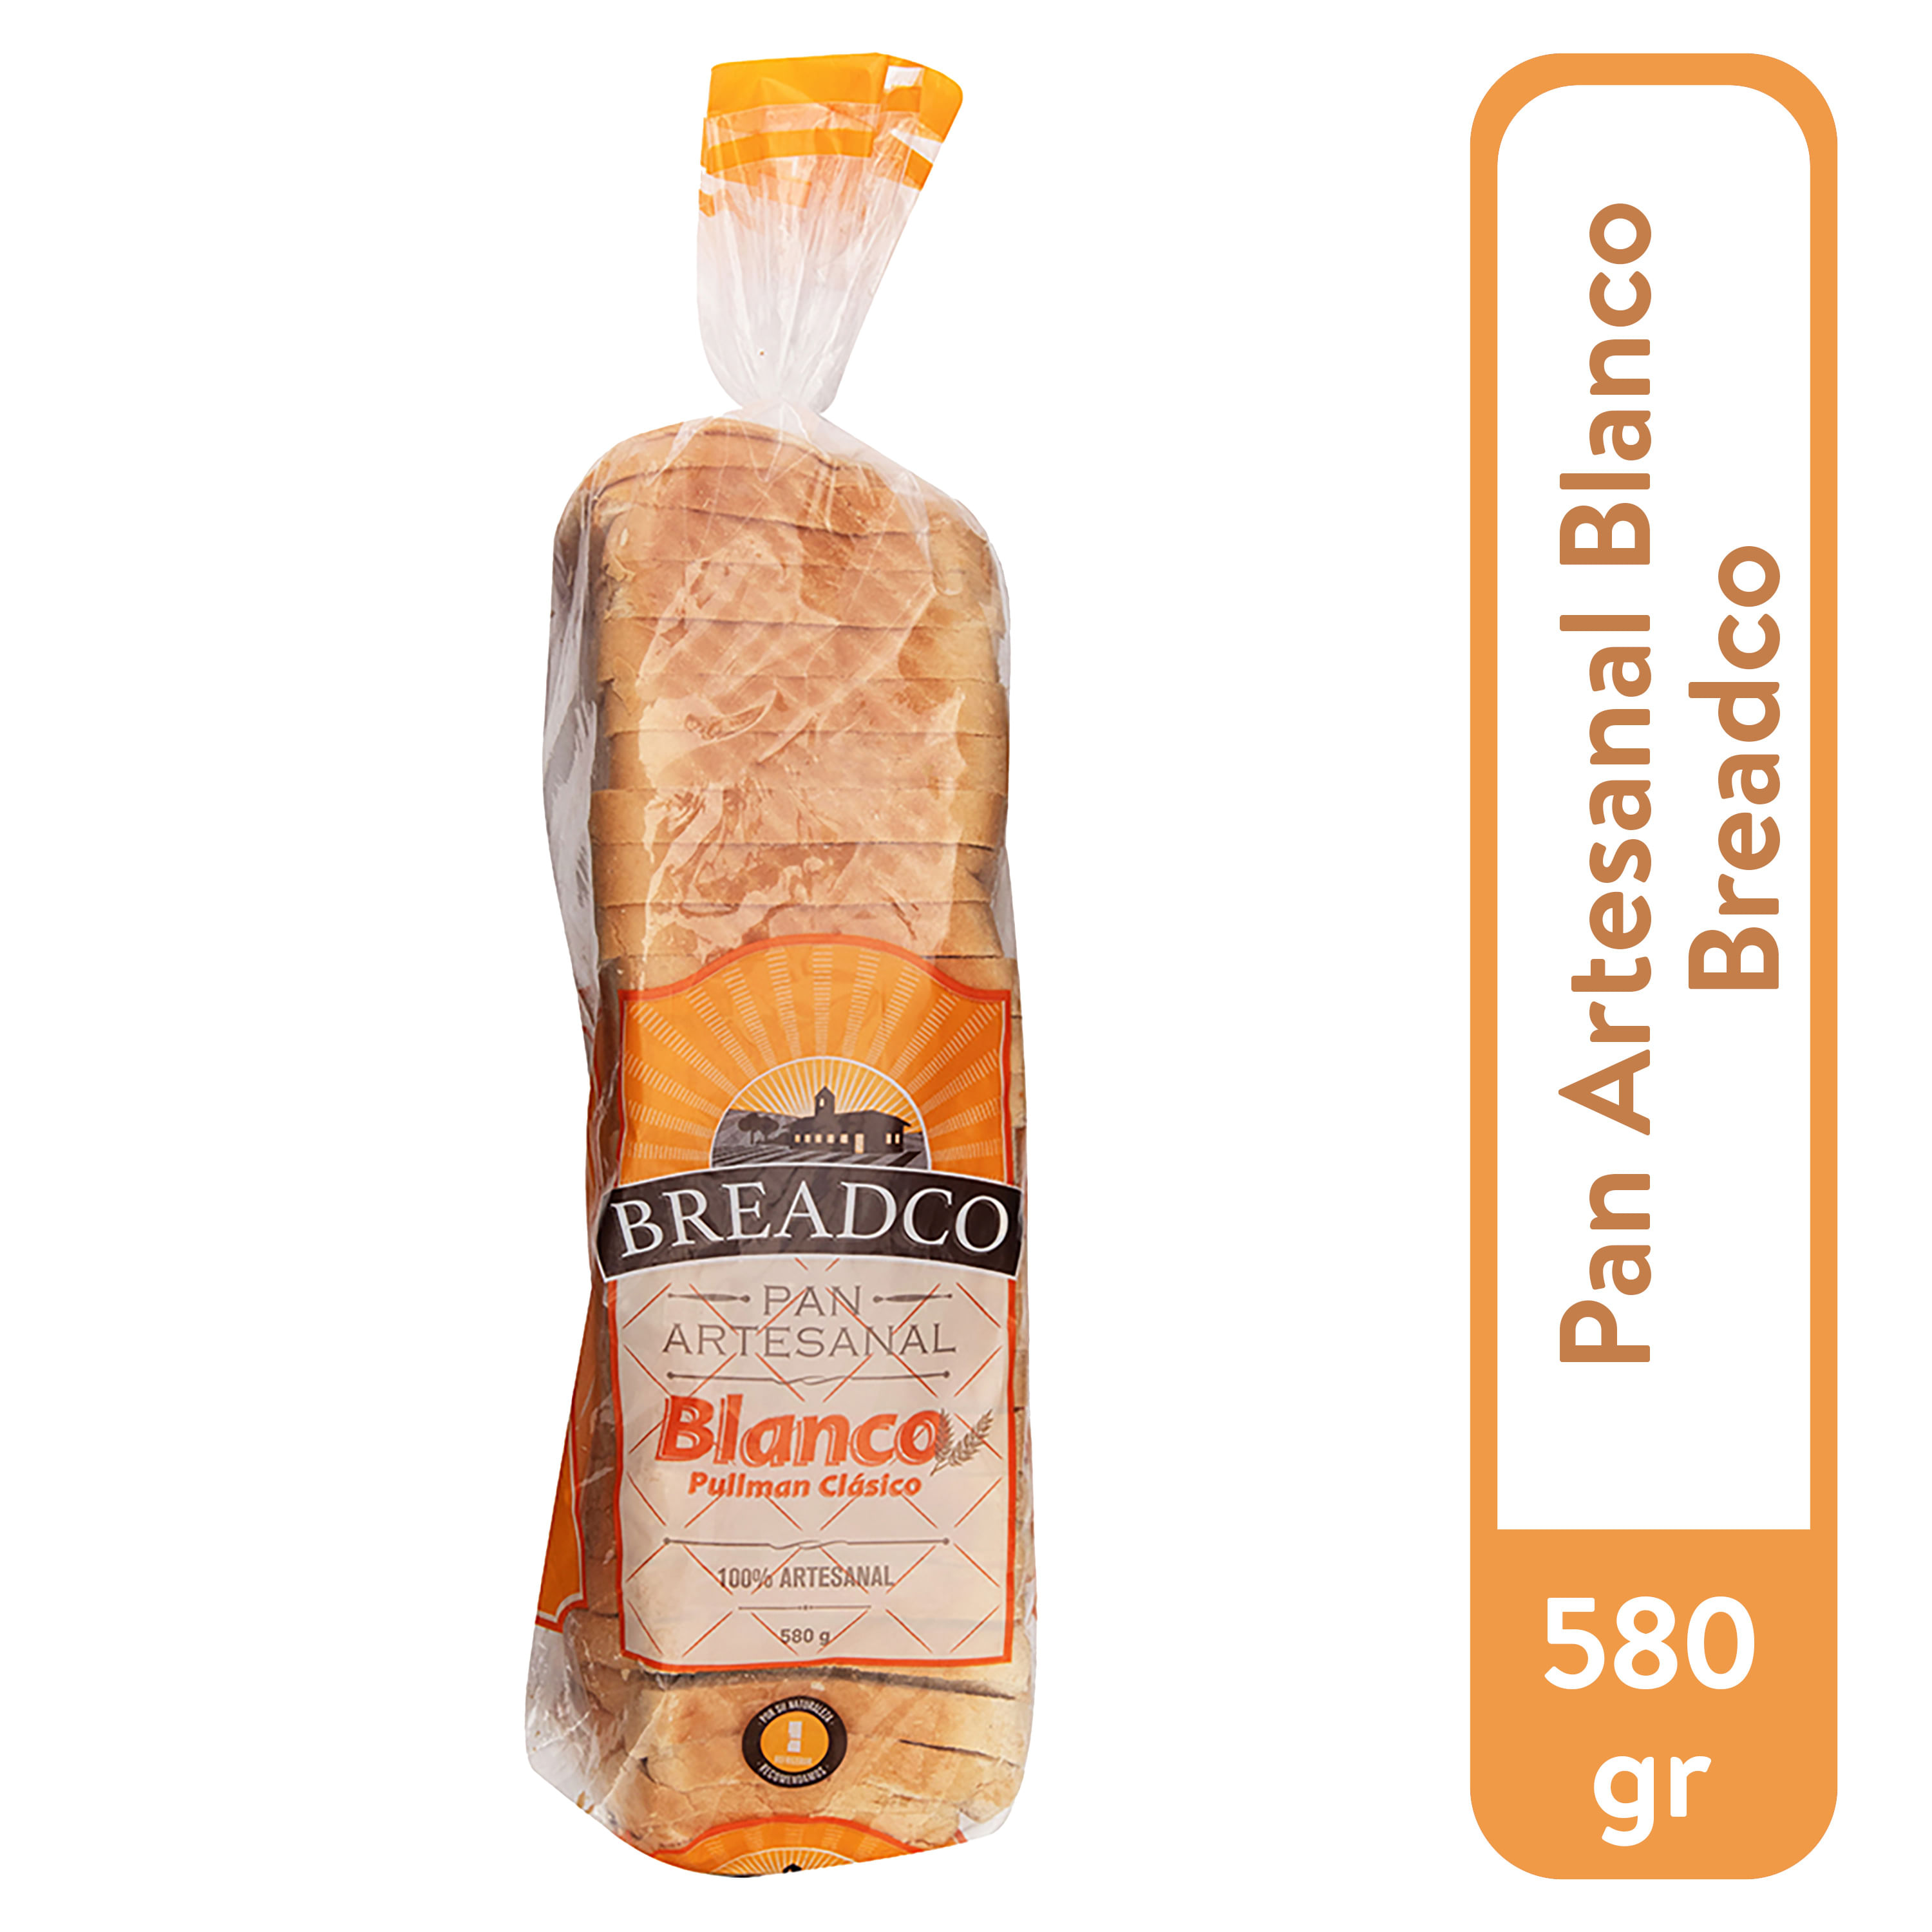 Pan de Molde Blanco 560 g